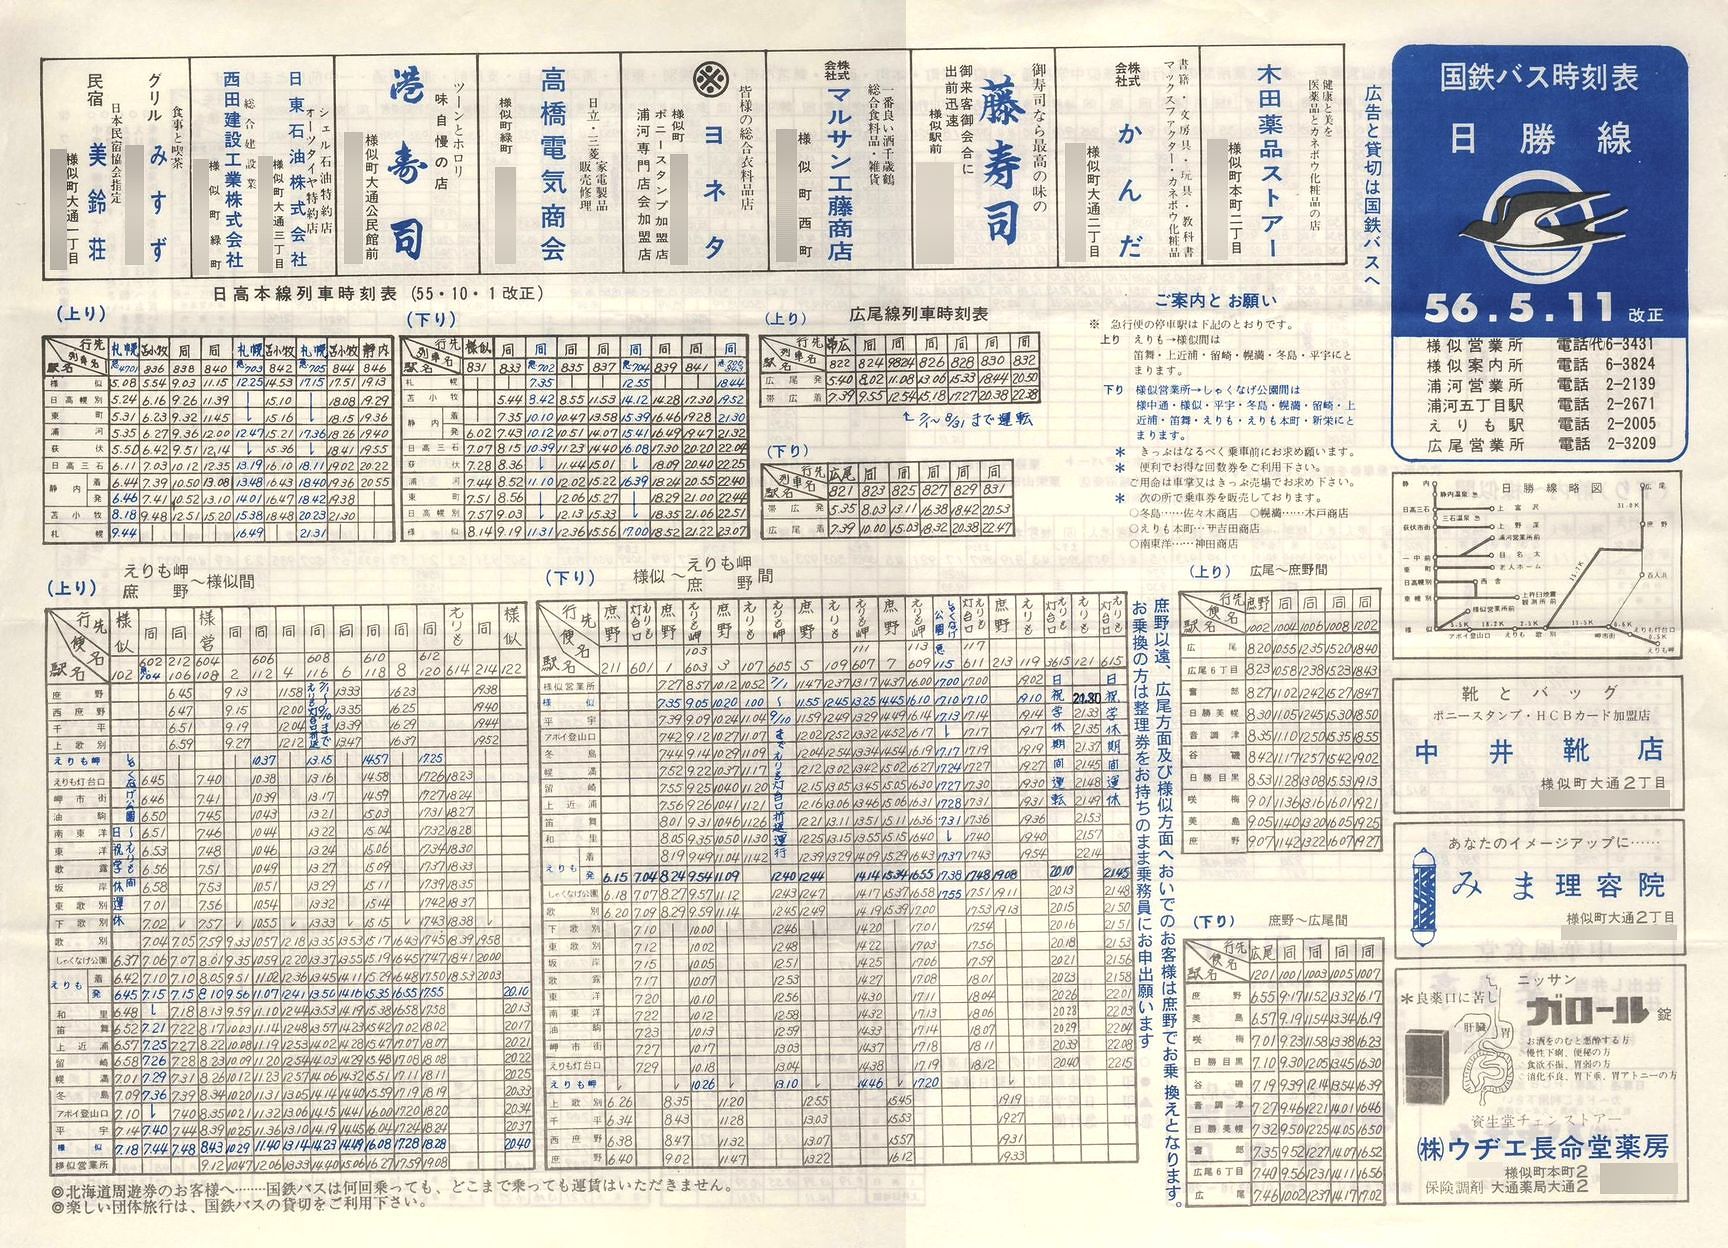 1981-05-11改正_国鉄バス_日勝線時刻表表面